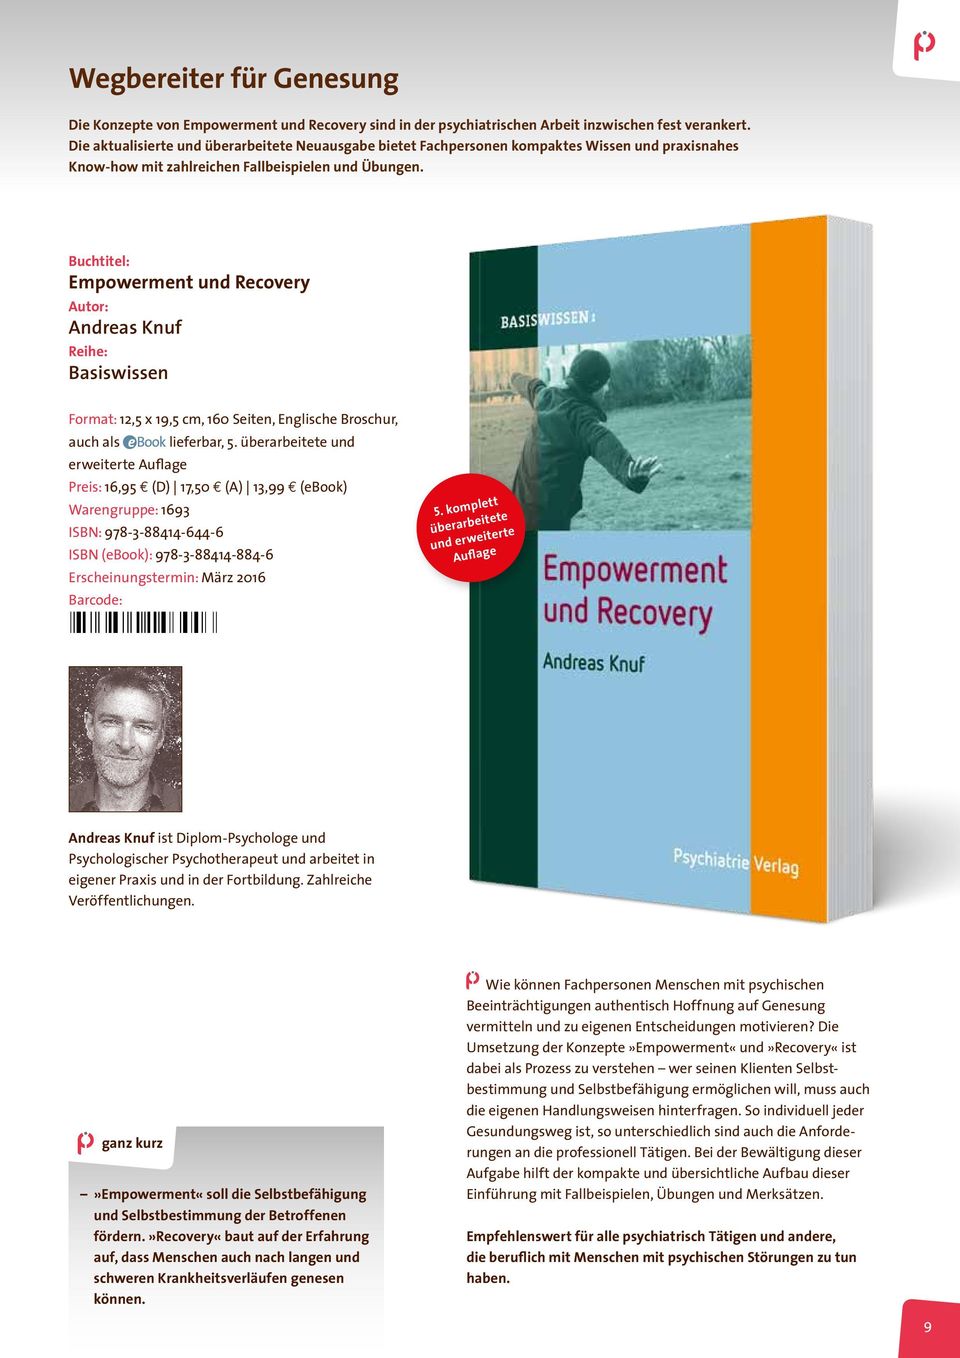 Buchtitel: Empowerment und Recovery Autor: Andreas Knuf Reihe: Basiswissen Format: 12,5 x 19,5 cm, 160 Seiten, Englische Broschur, auch als lieferbar, 5.